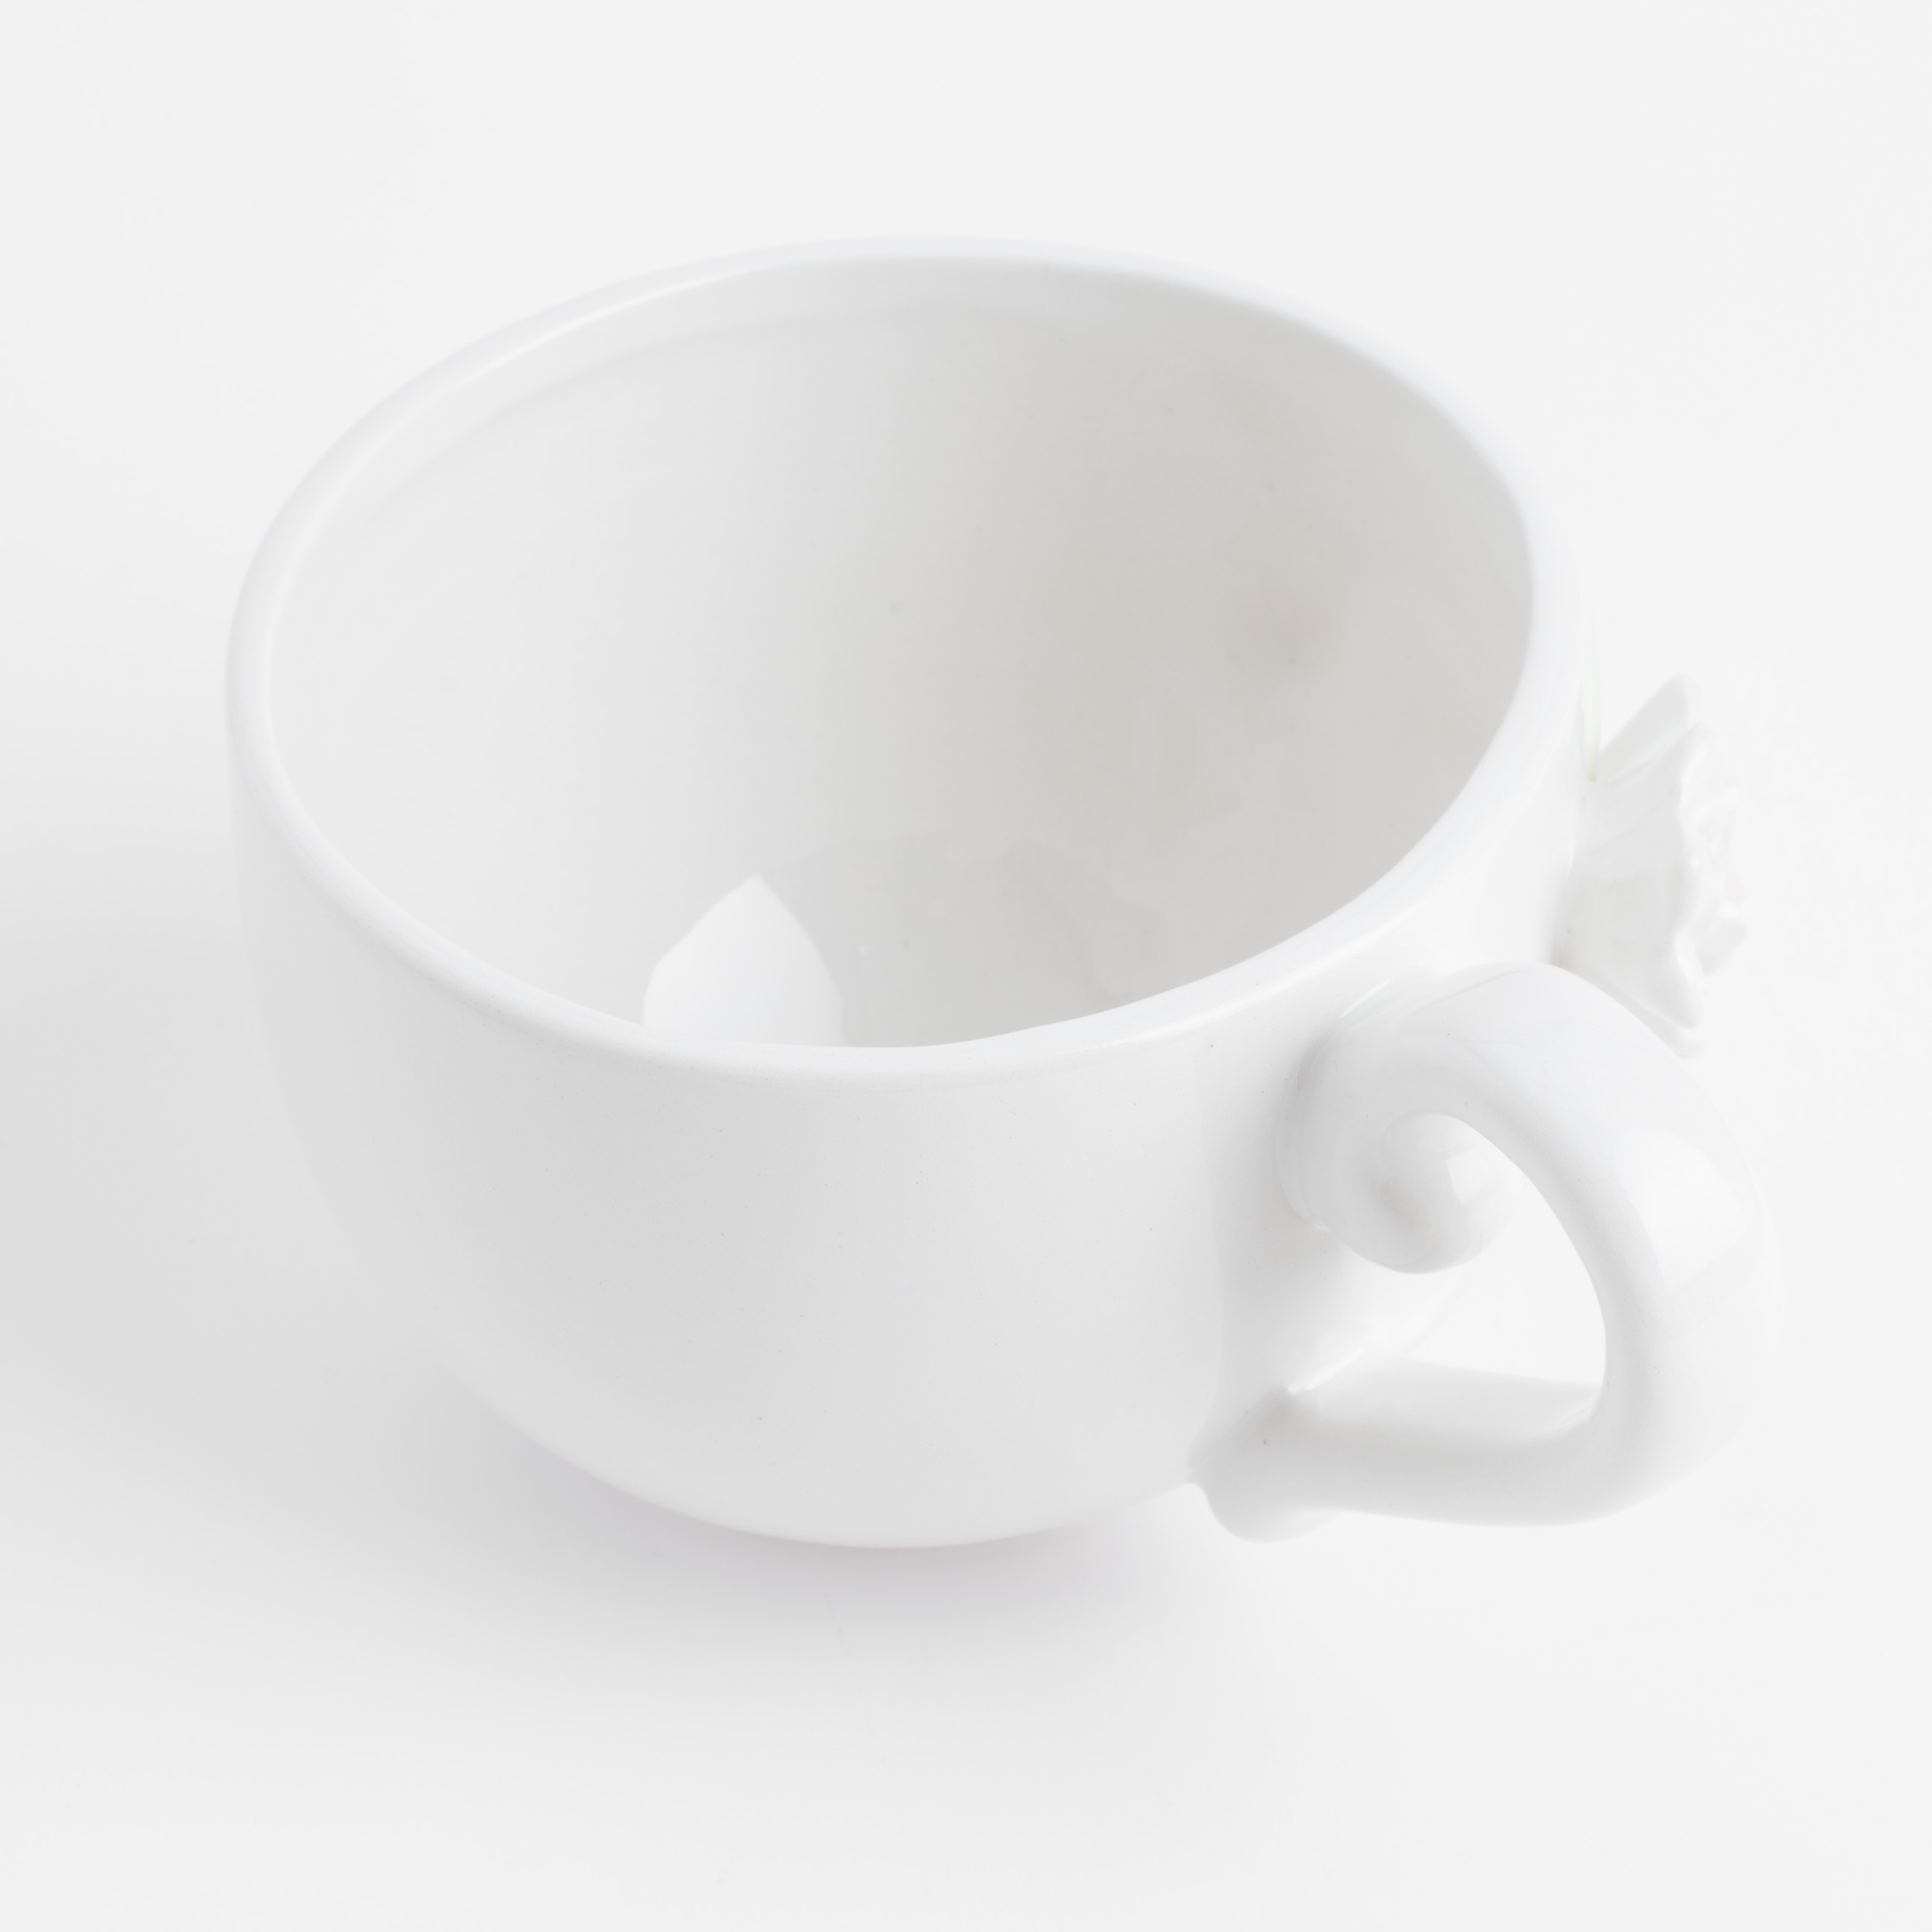 Пара чайная для завтрака, 1 перс, 2 пр, 420 мл, керамика, молочная, Цветы магнолии, Magnolia изображение № 6